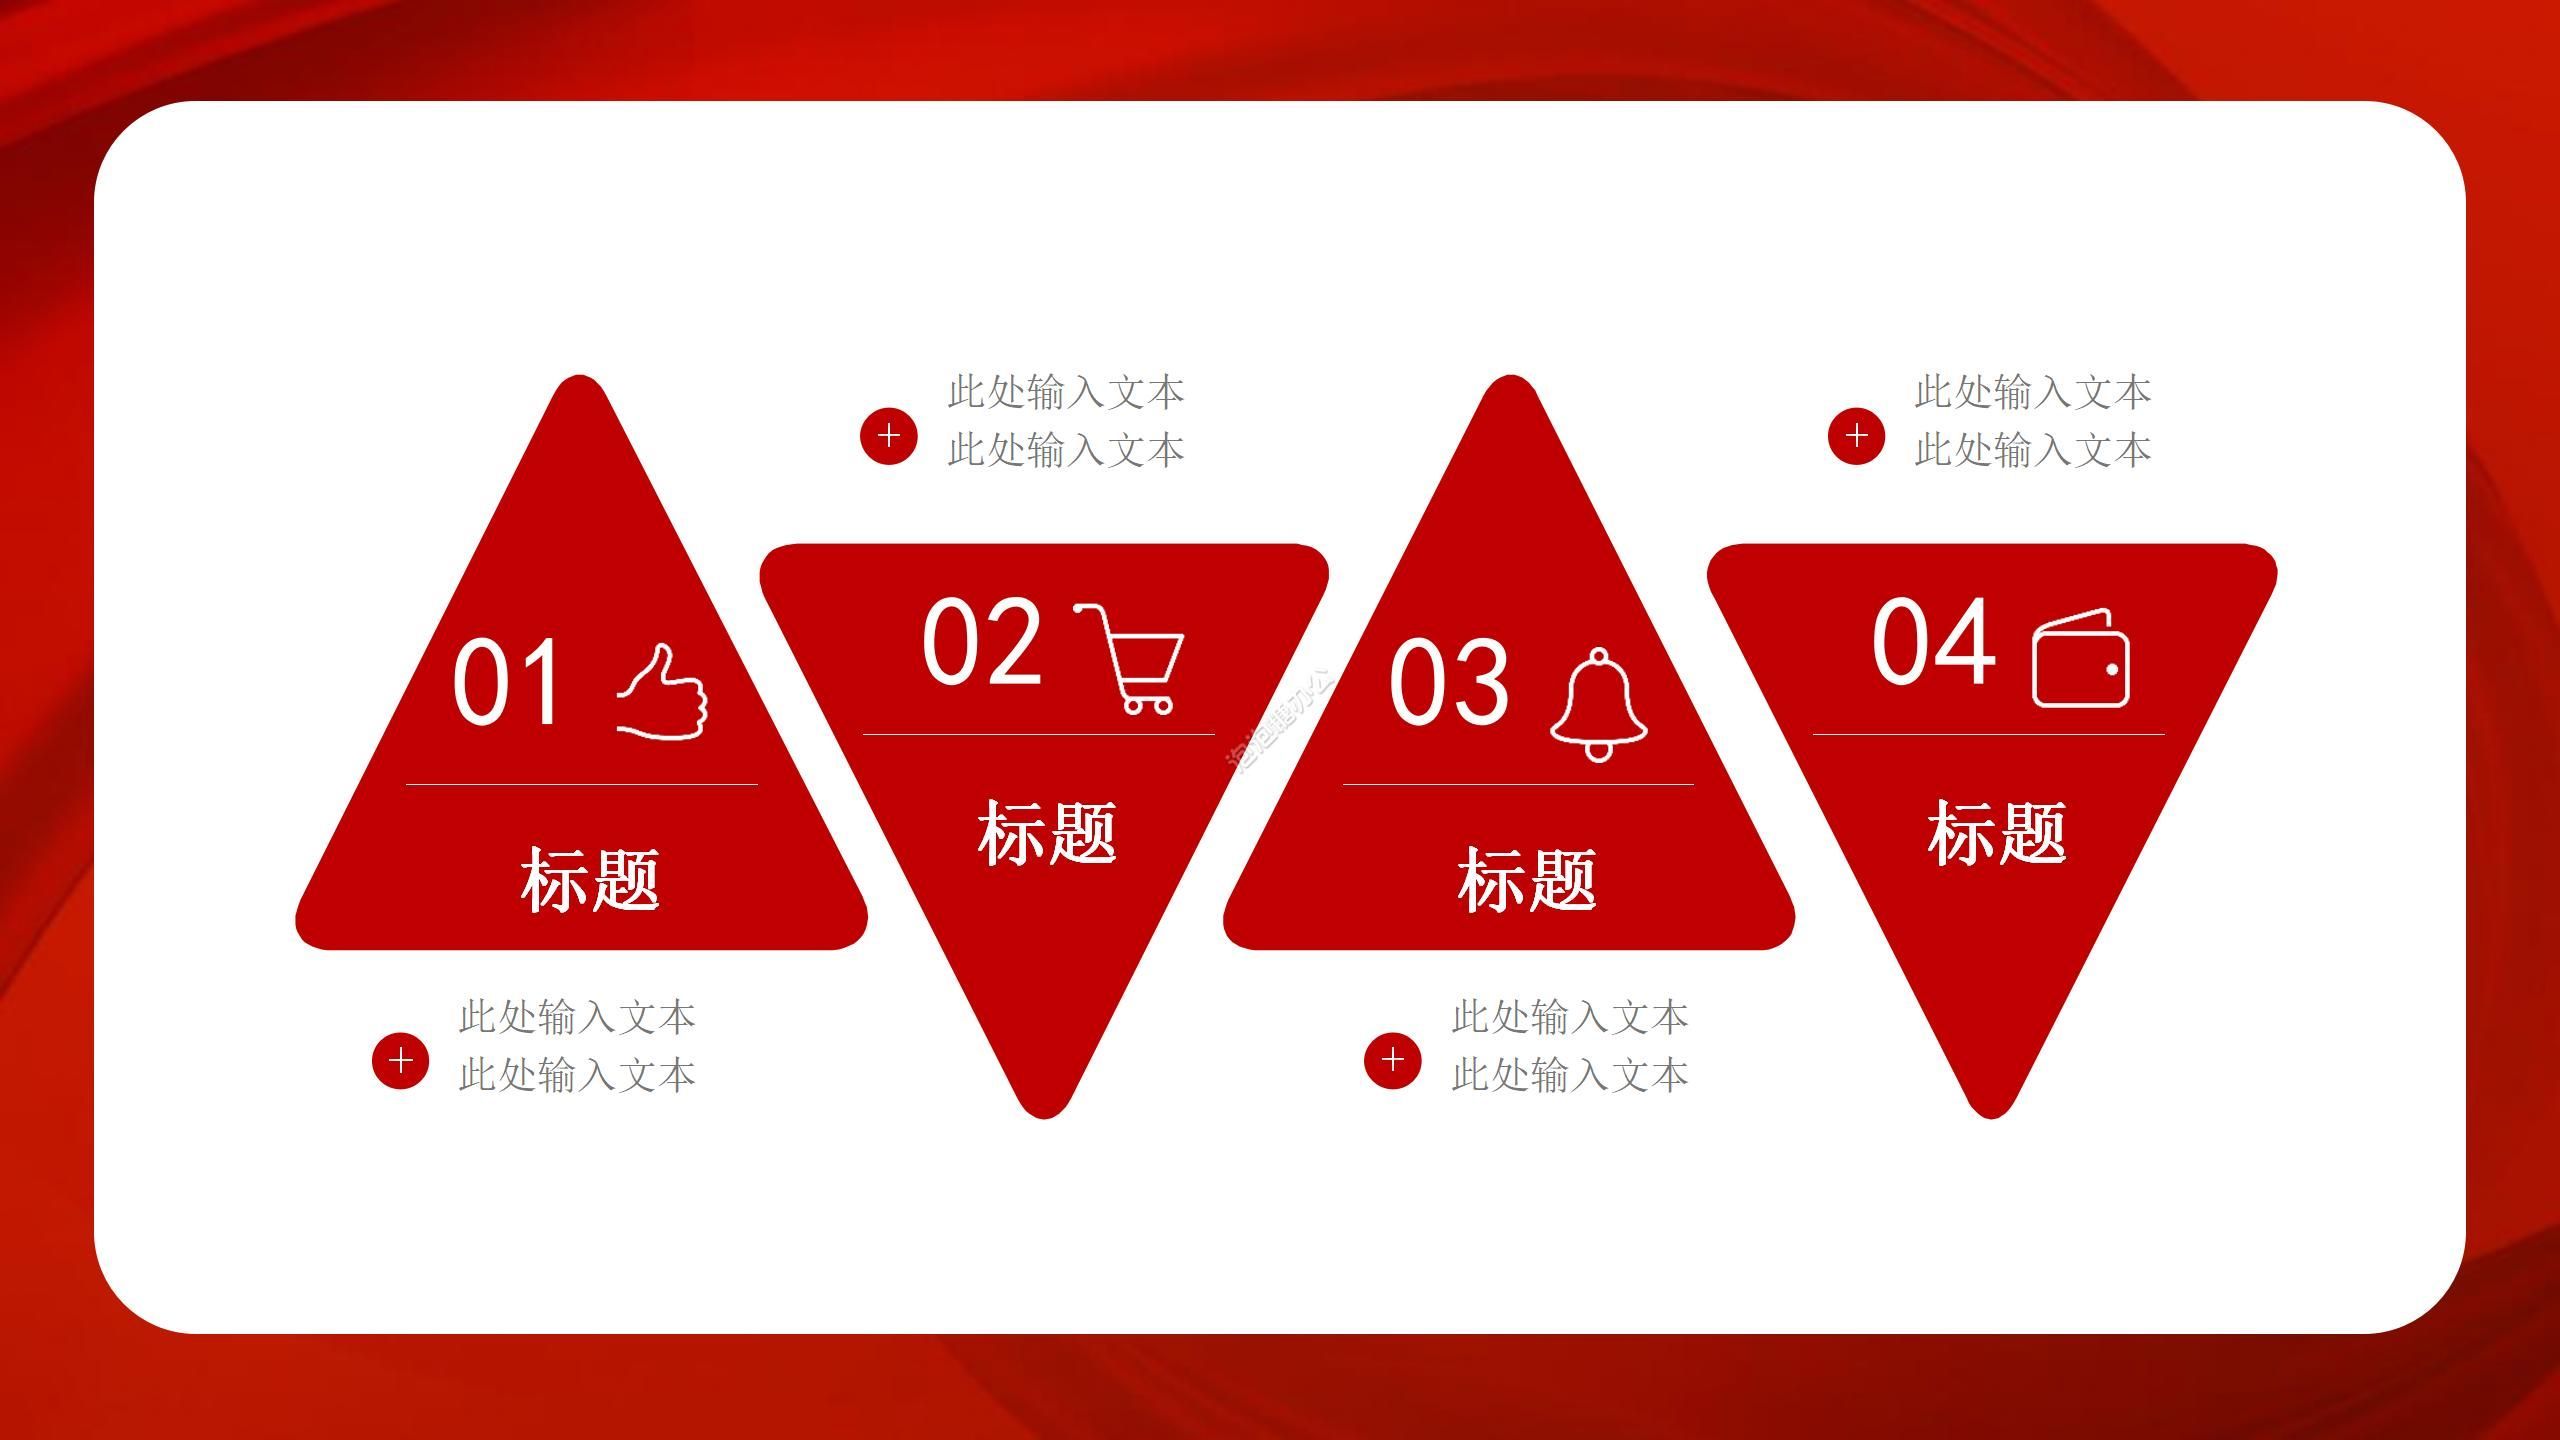 紅色大氣中國紅背景黨政主題建軍節活動宣傳PPT模板